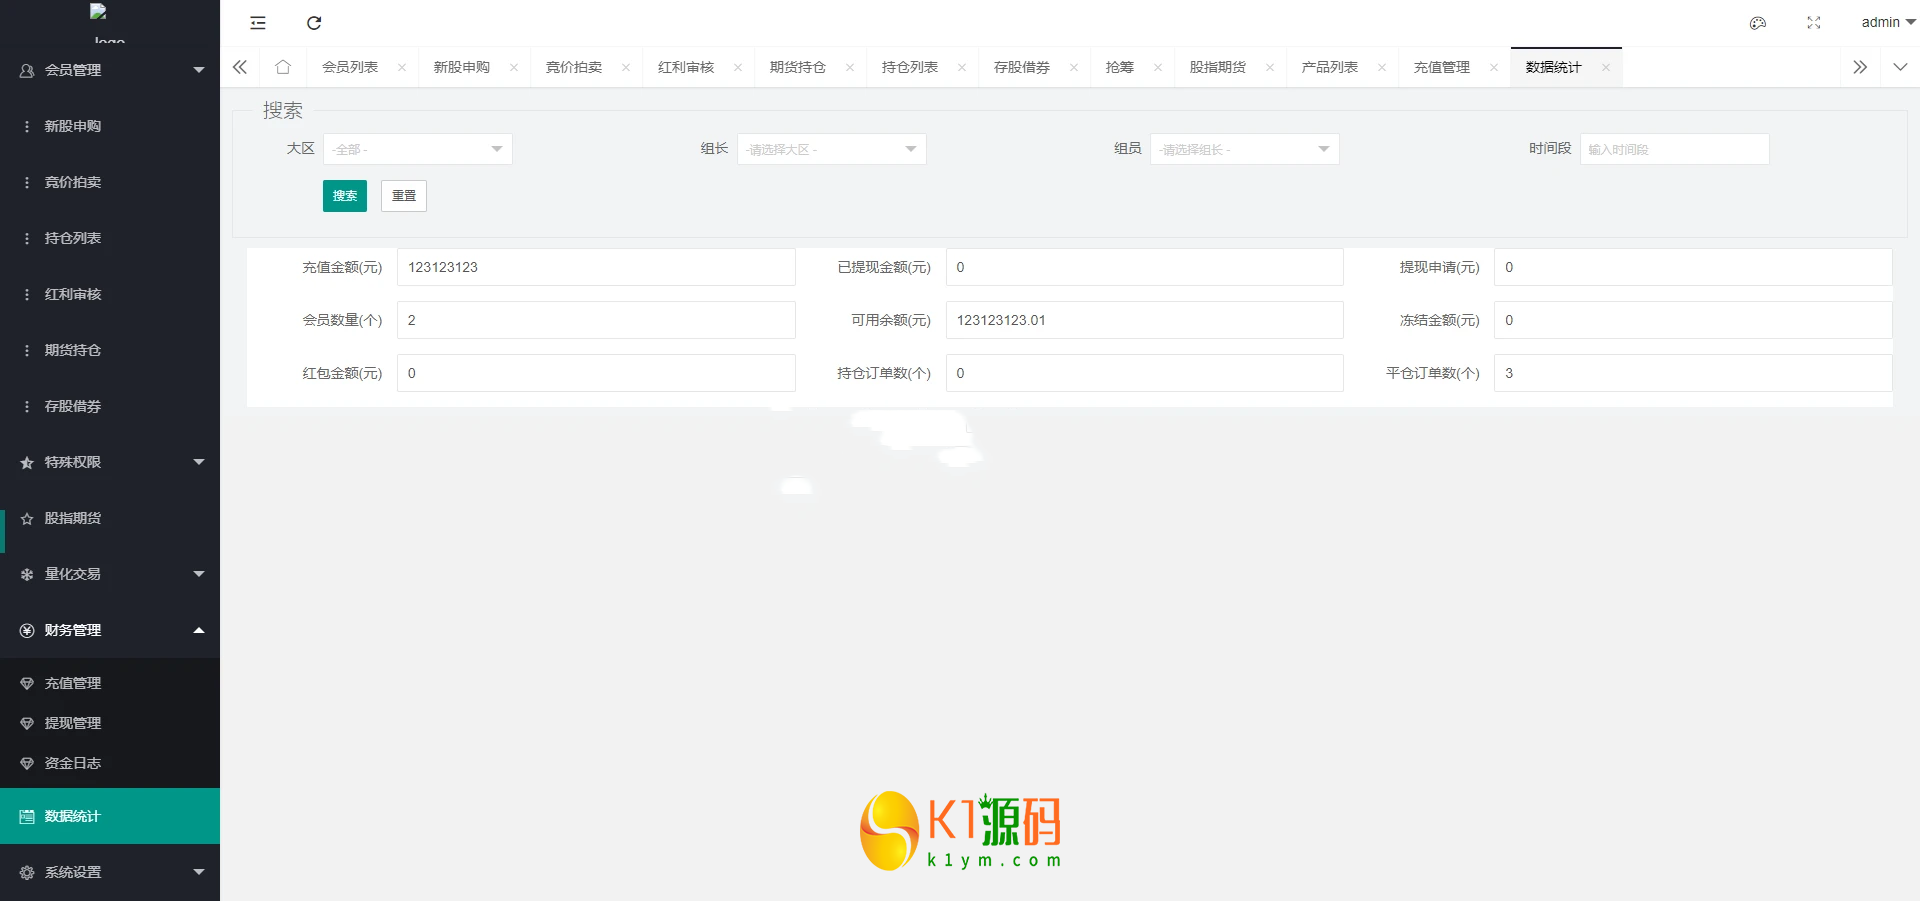 新版台湾股票系统/股票配资源码/申购折扣交易系统插图9